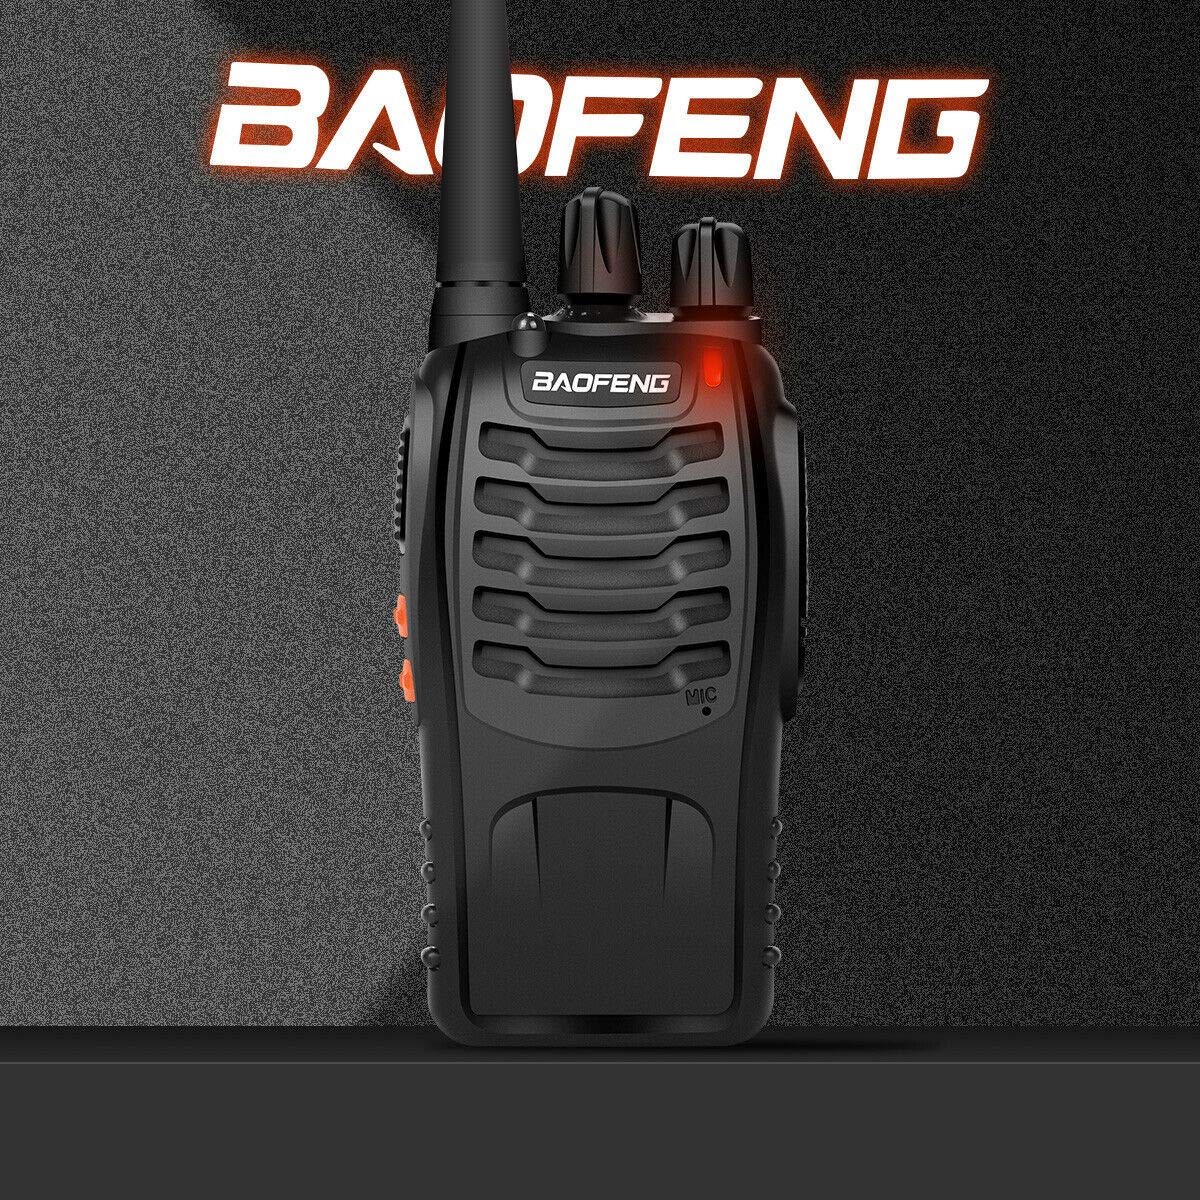 Uniden PMR-446-SWPF paire de talkie-walkies étanches